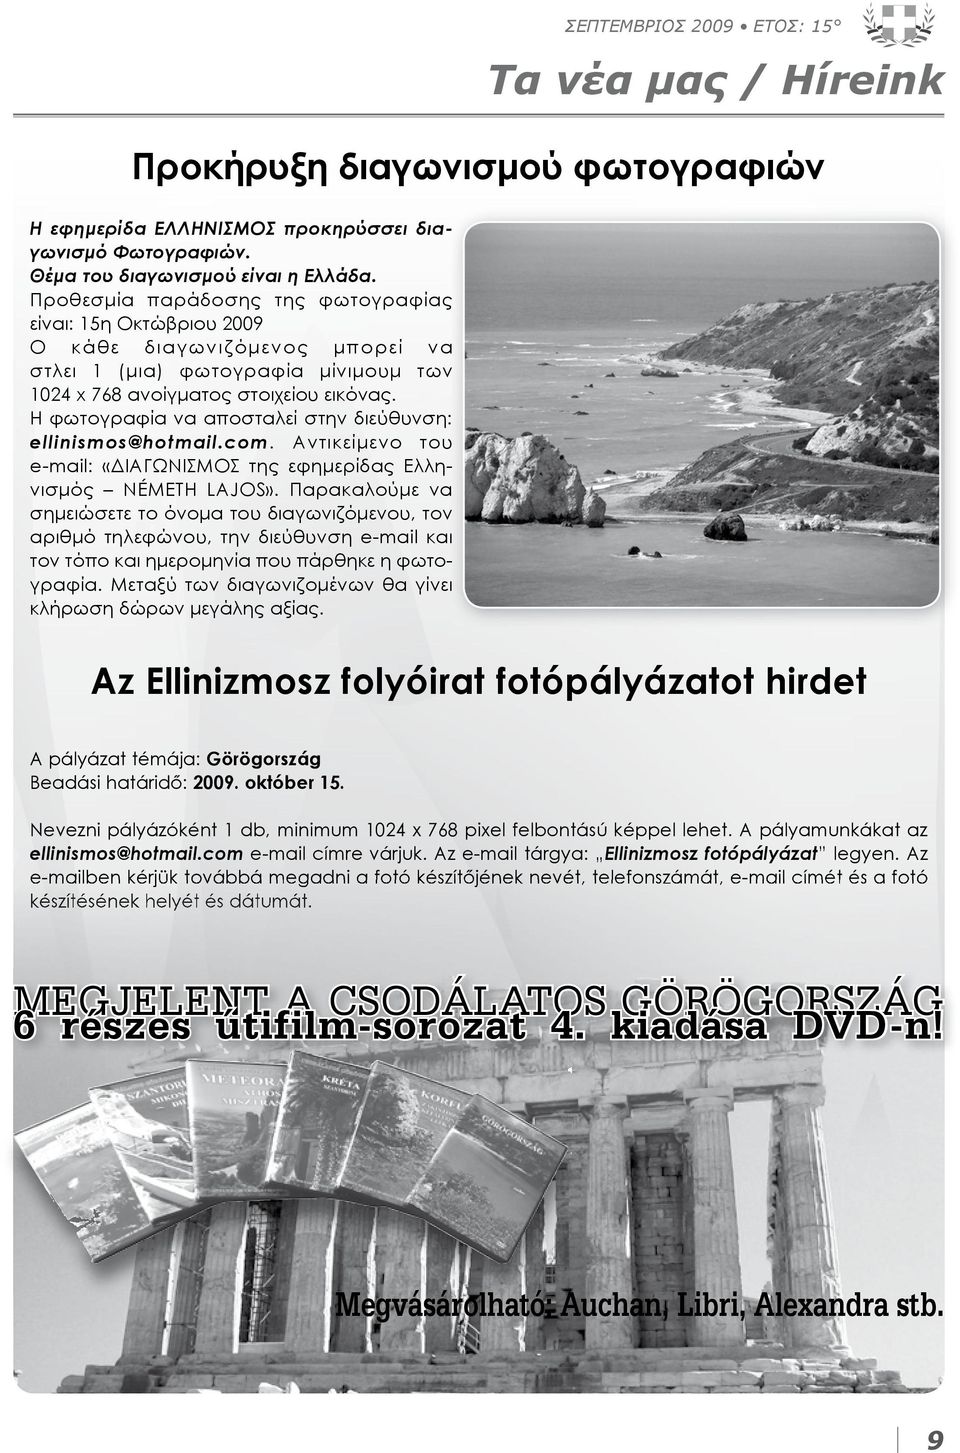 Η φωτογραφία να αποσταλεί στην διεύθυνση: ellinismos@hotmail.com. Αντικείμενο του e-mail: «ΔΙΑΓΩΝΙΣΜΟΣ της εφημερίδας Ελληνισμός NÉMETH LAJOS».